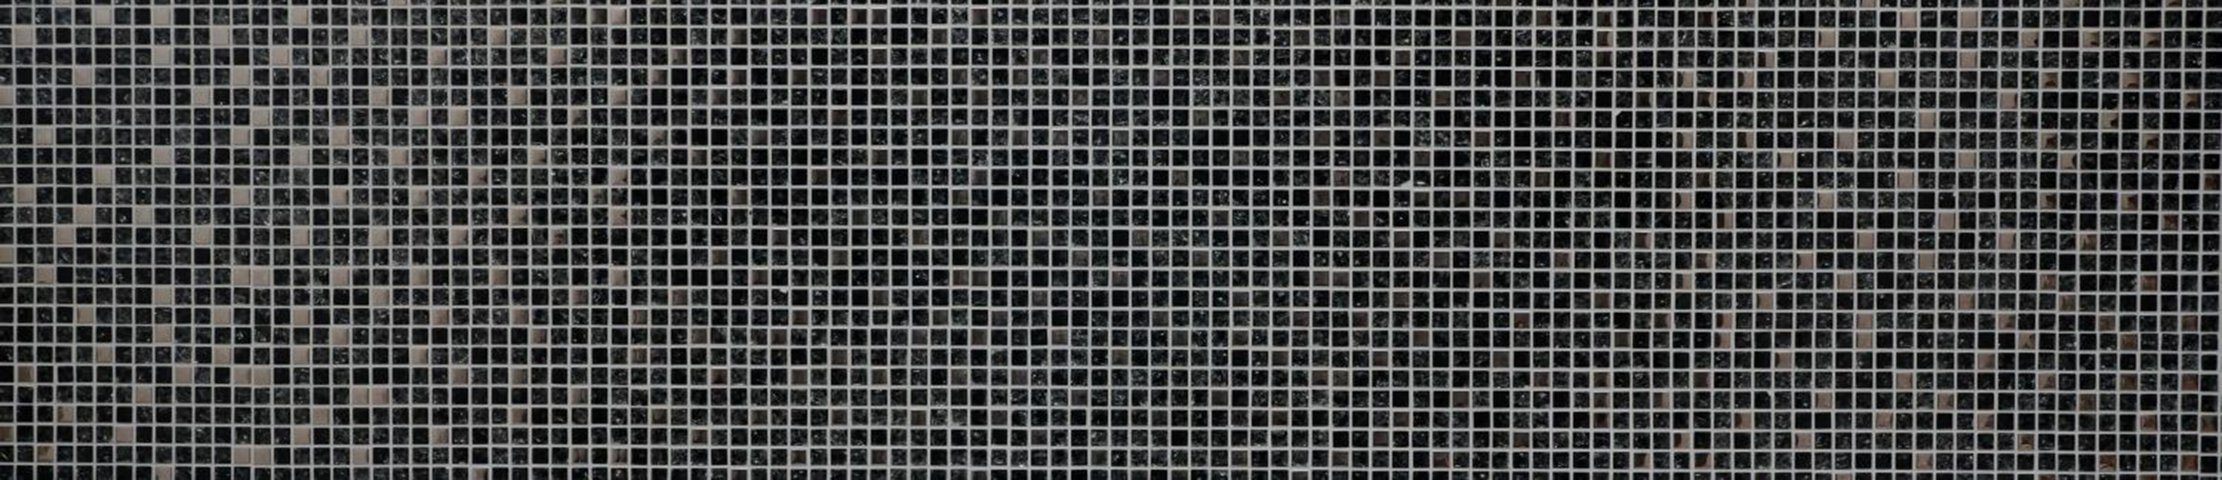 Mosani Mosaikfliesen Glasmosaik Crystal Mosaikfliesen silber schwarz / 10 glänzend Matten